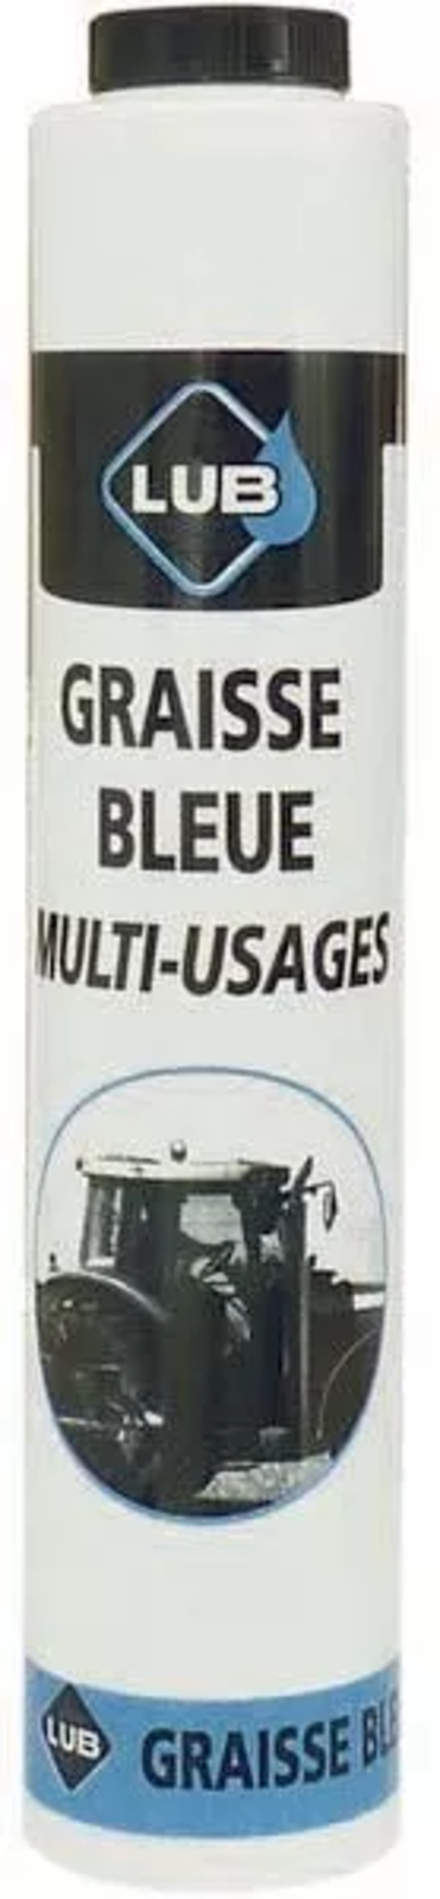 LOT 24X10473 CARTOUCHE GRAISSE MULTI-USAGE BLEUE 400GR - 1047324